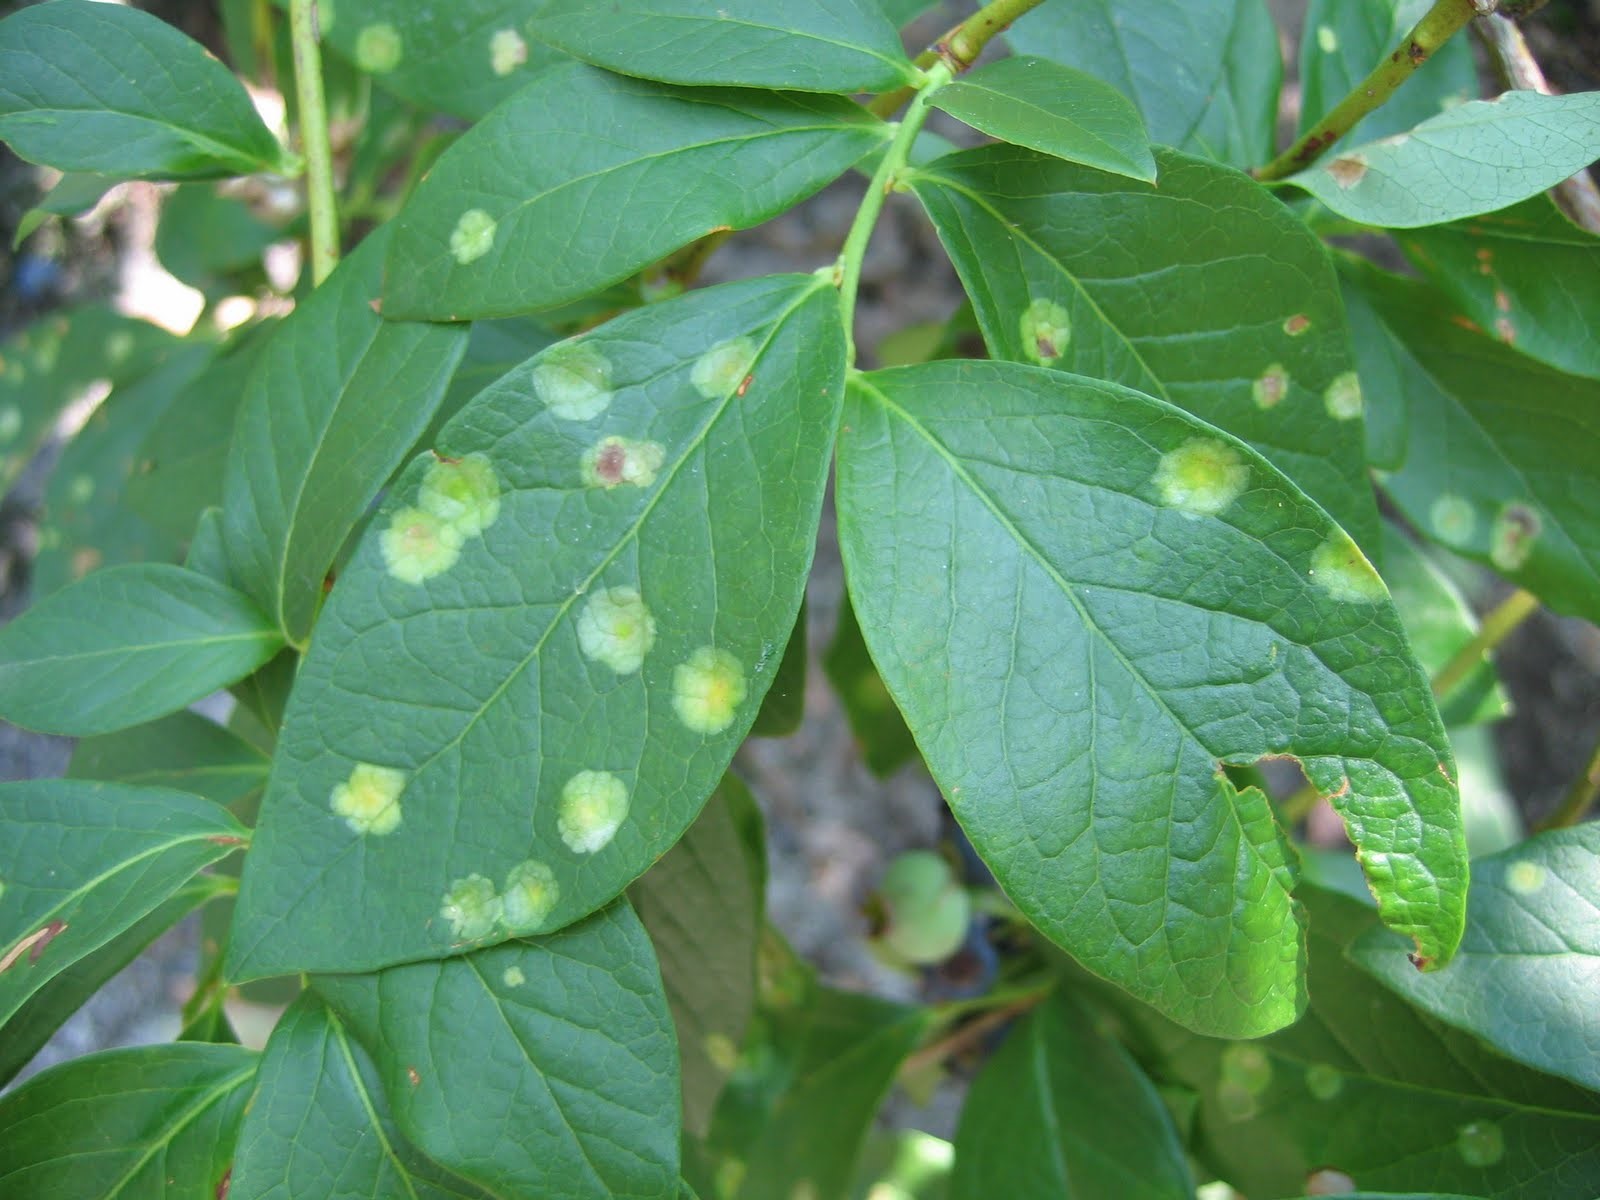 Exobasidium leaf spot on blueberry leaves